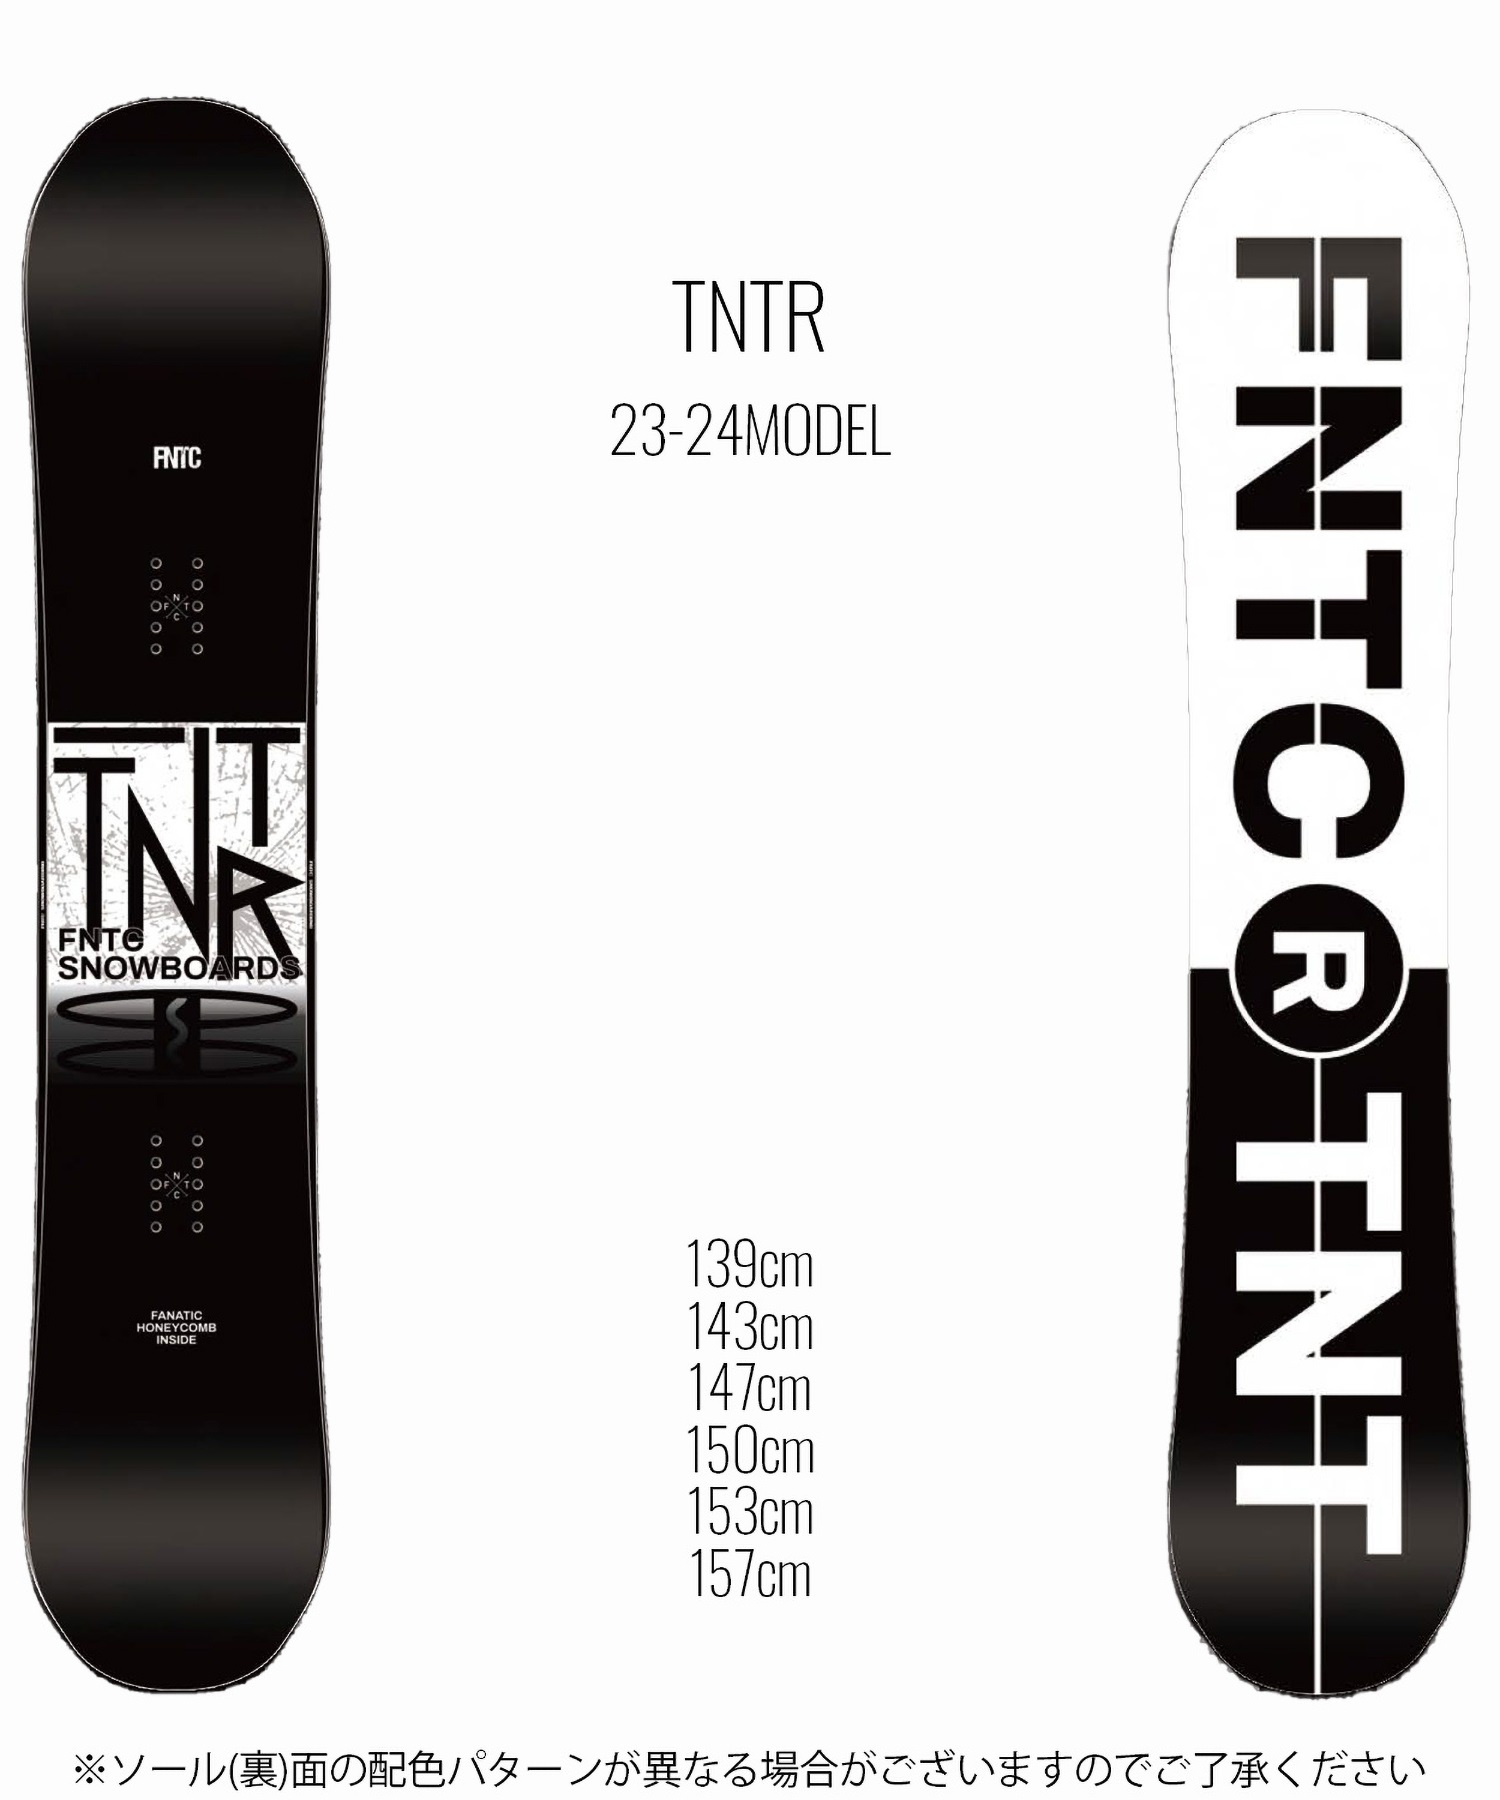 スノーボード 板 ユニセックス FNTC エフエヌティーシー TNTRBW 23-24